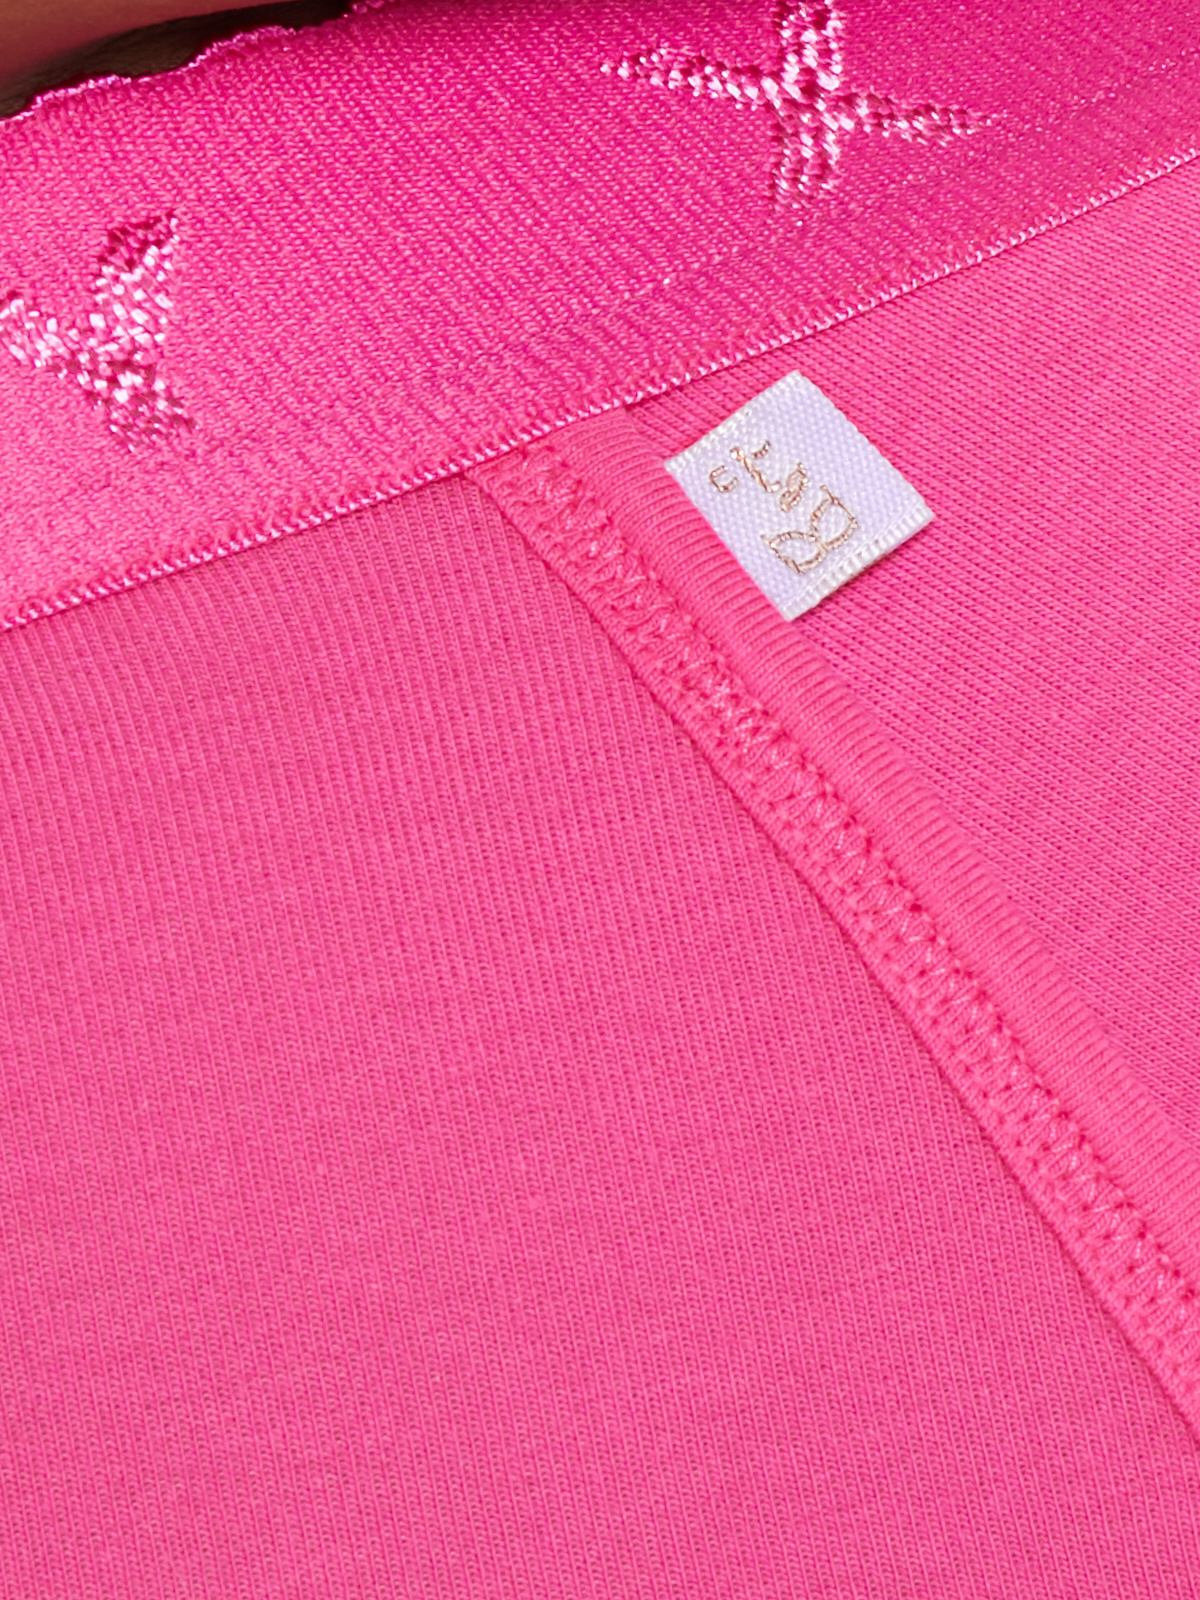 CLF Savage X Cotton Jersey Hot Short in Pink | SAVAGE X FENTY